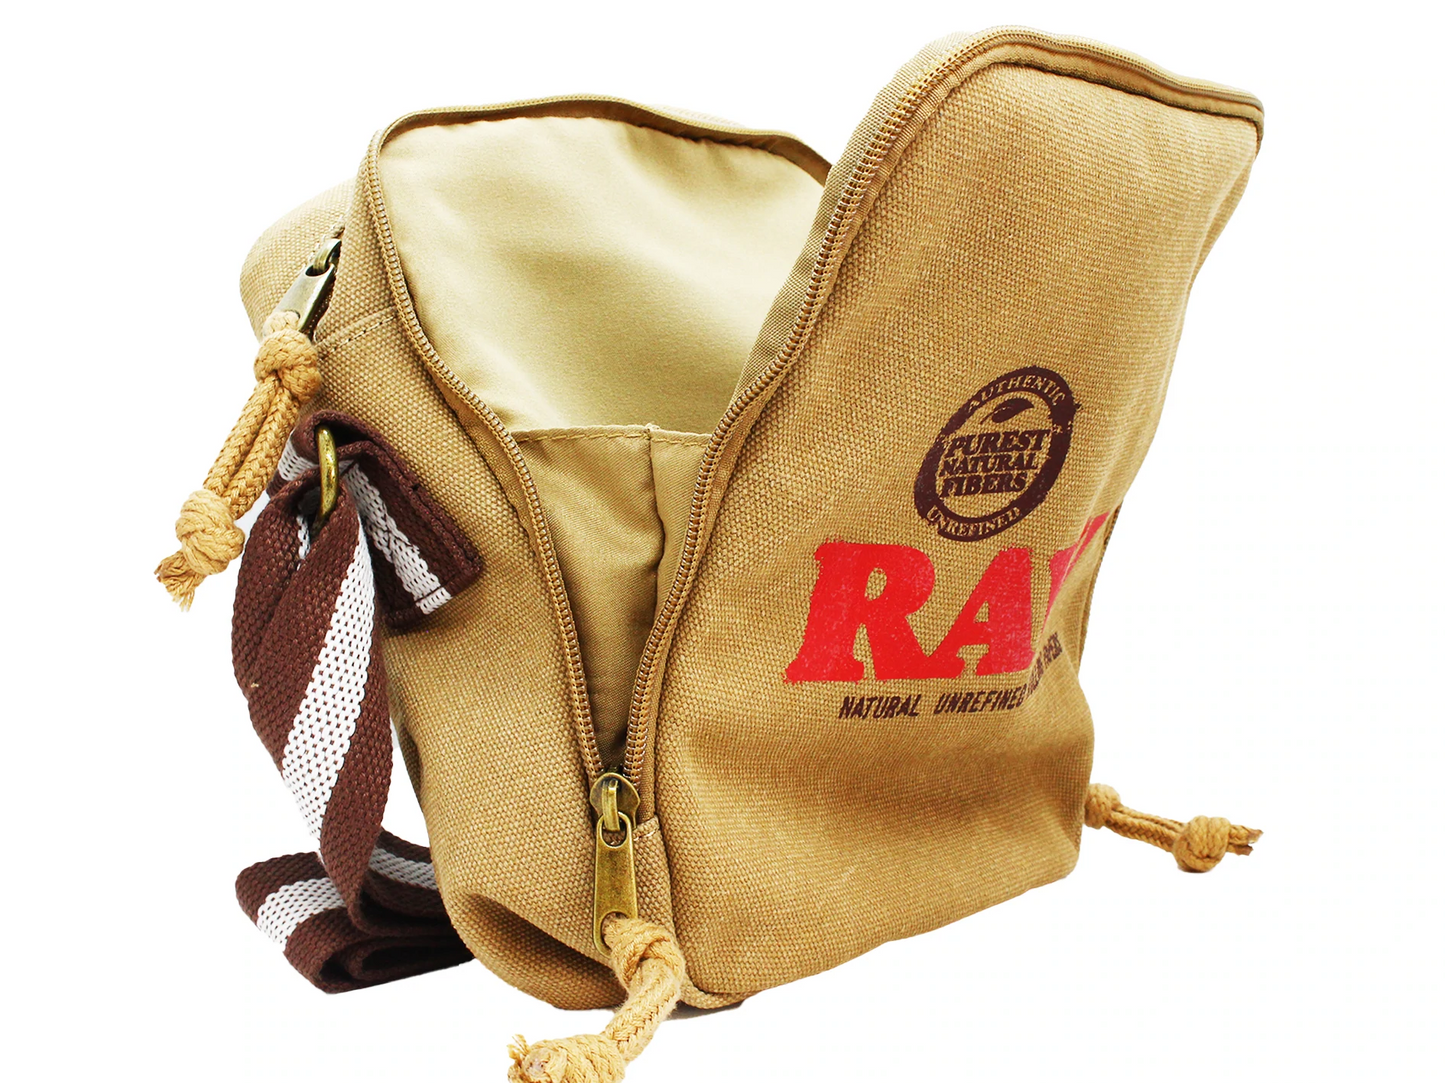 RAW - Shoulder Bag